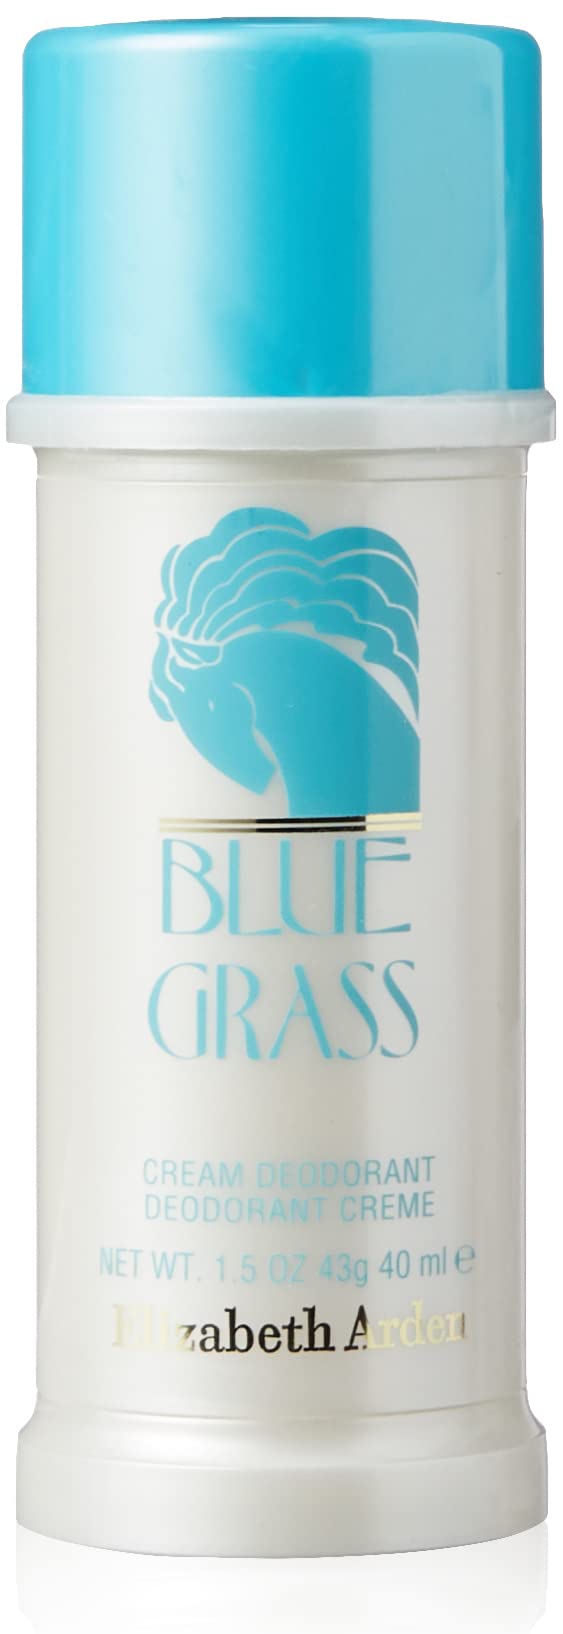 Elizabeth Arden Blue Grass Deodorant Creme 40ml